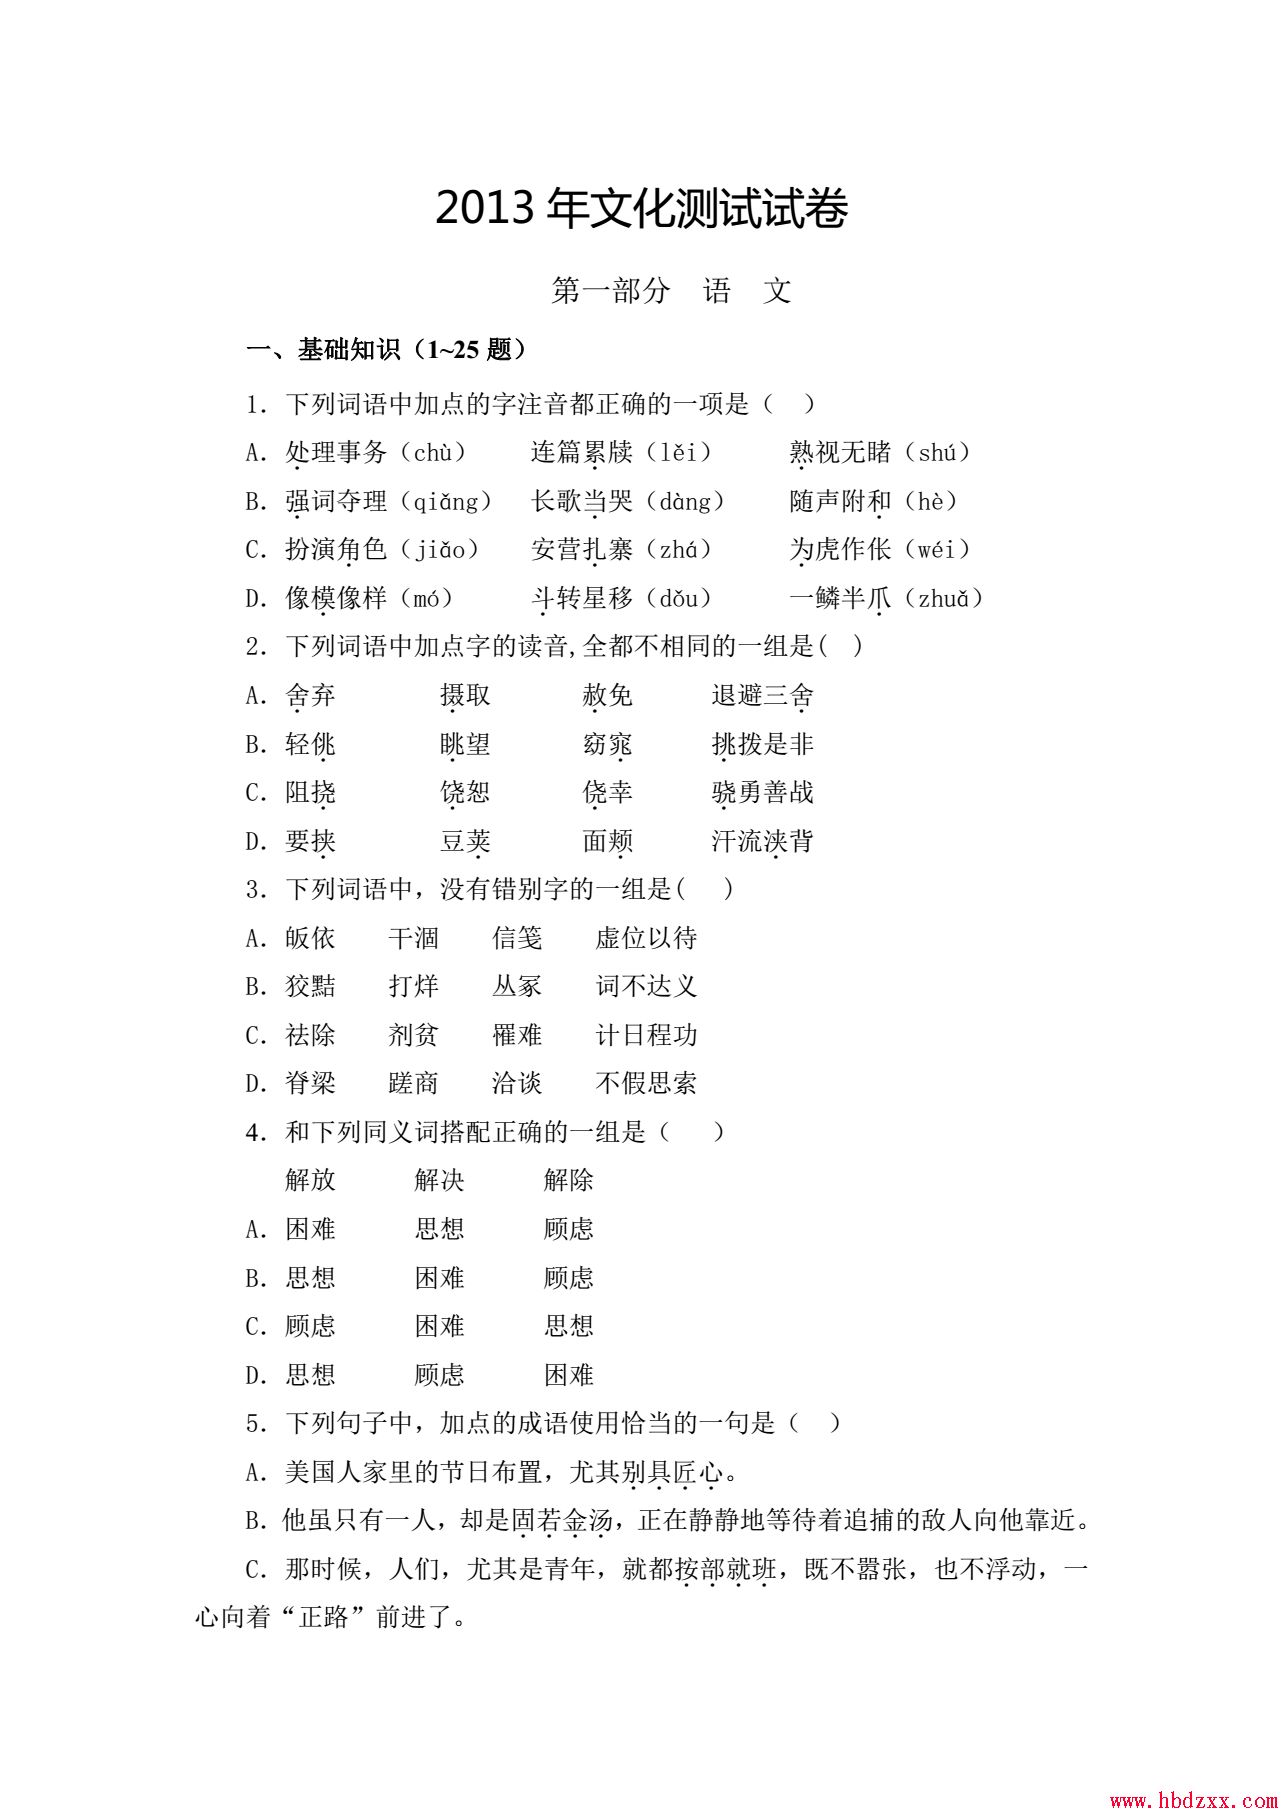 河北App职业技术学院2013年语文单招试题 图1